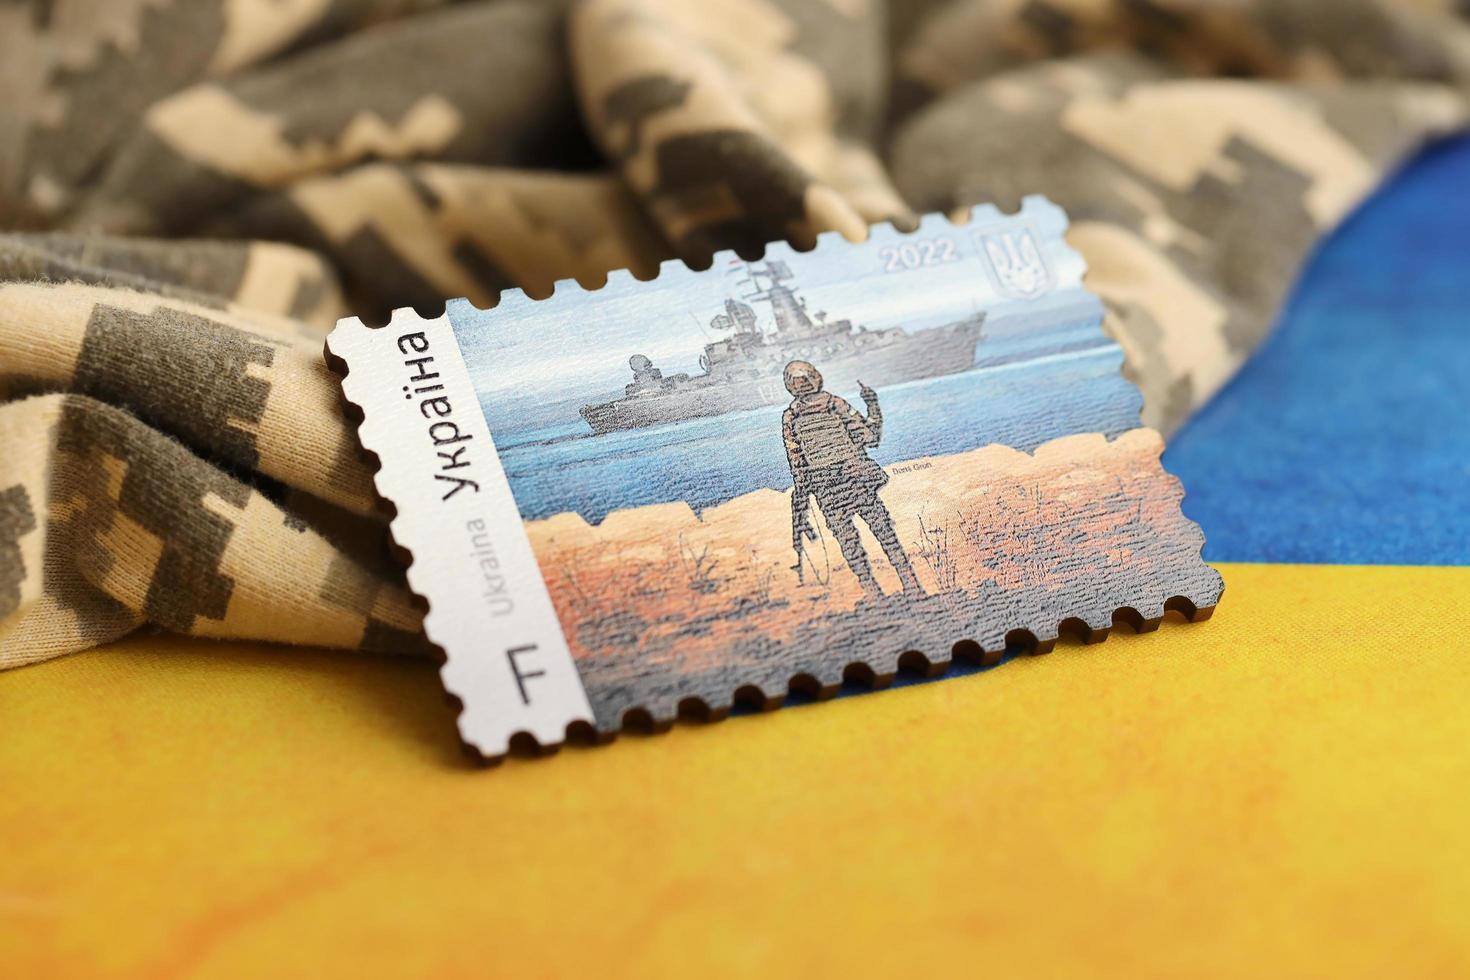 ternopil, ucrania - 2 de septiembre de 2022 famoso matasellos ucraniano con buque de guerra ruso y soldado ucraniano como recuerdo de madera en uniforme de camuflaje del ejército y bandera nacional foto